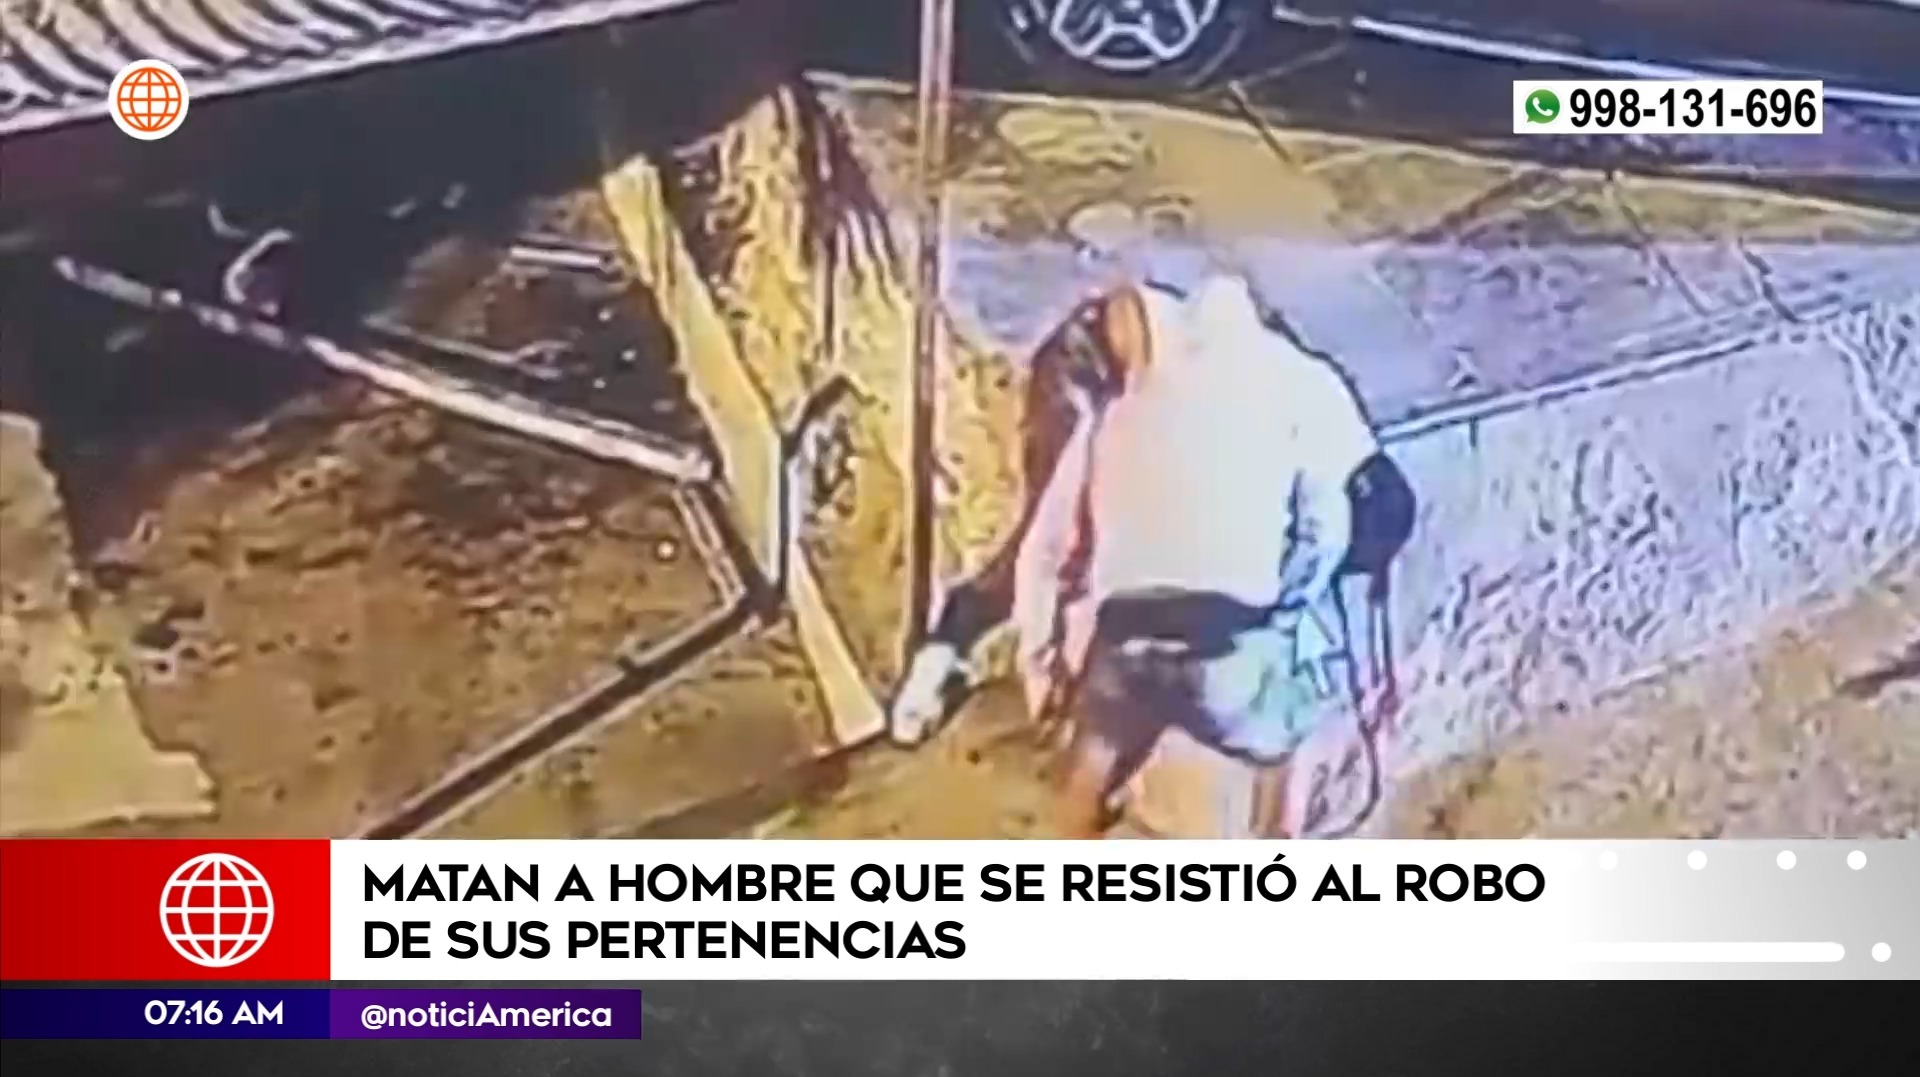 Asesinato en San Juan de Lurigancho. Foto: América Noticias